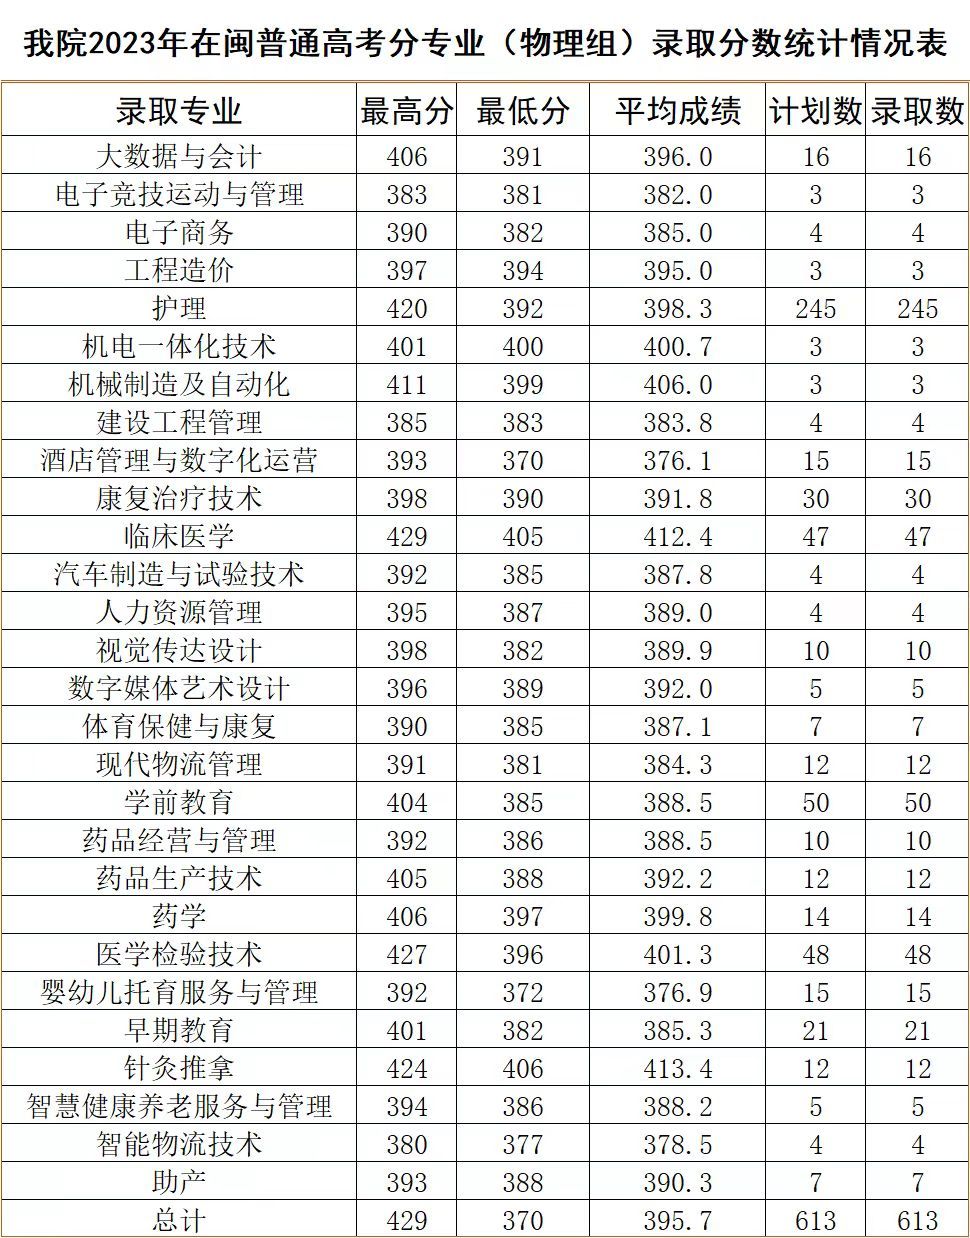 三明医学科技职业学院2023年福建省普通高考分专业录取分数统计情况表